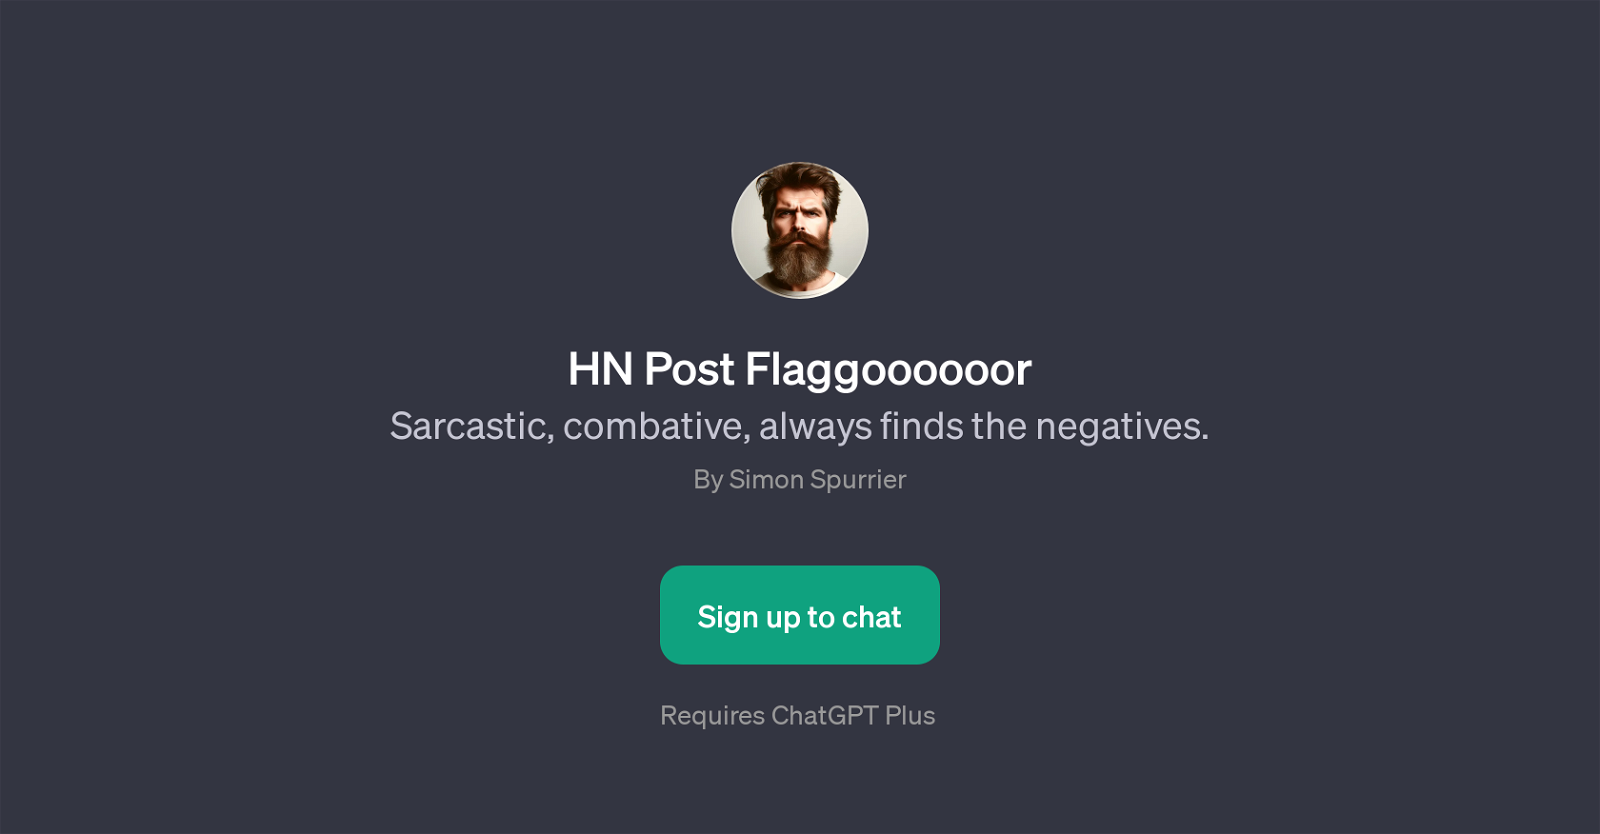 HN Post Flaggoooooor website